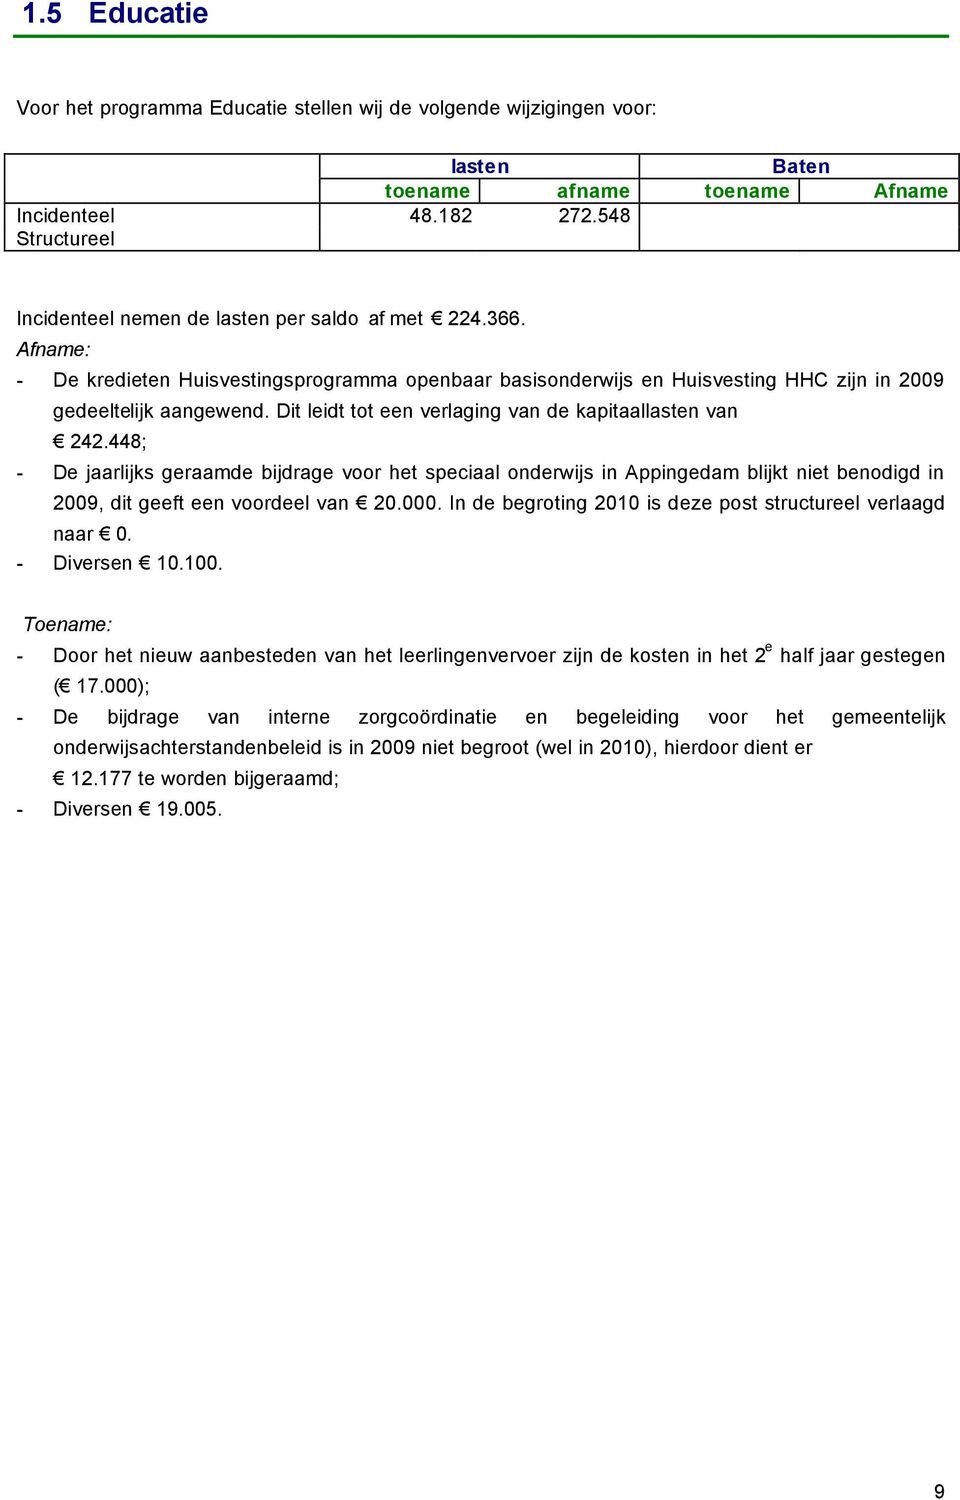 Dit leidt tot een verlaging van de kapitaallasten van 242.448; - De jaarlijks geraamde bijdrage voor het speciaal onderwijs in Appingedam blijkt niet benodigd in 2009, dit geeft een voordeel van 20.